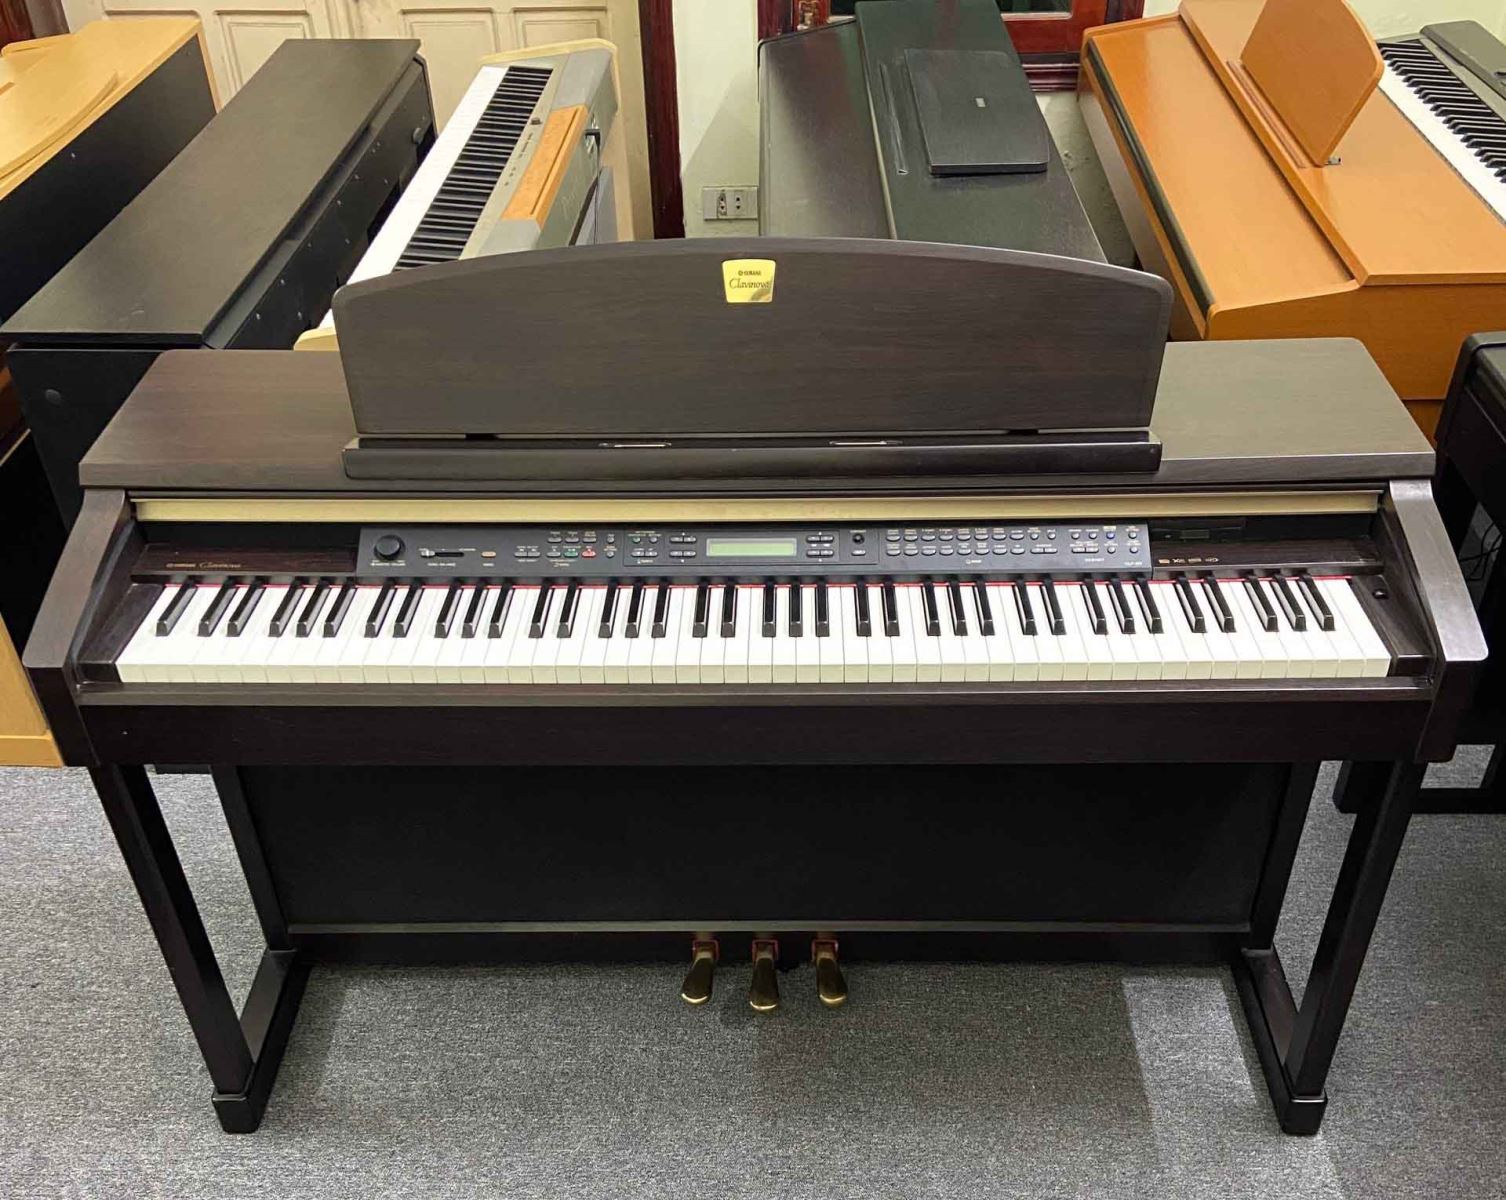 đàn piano điện yamaha giá rẻ